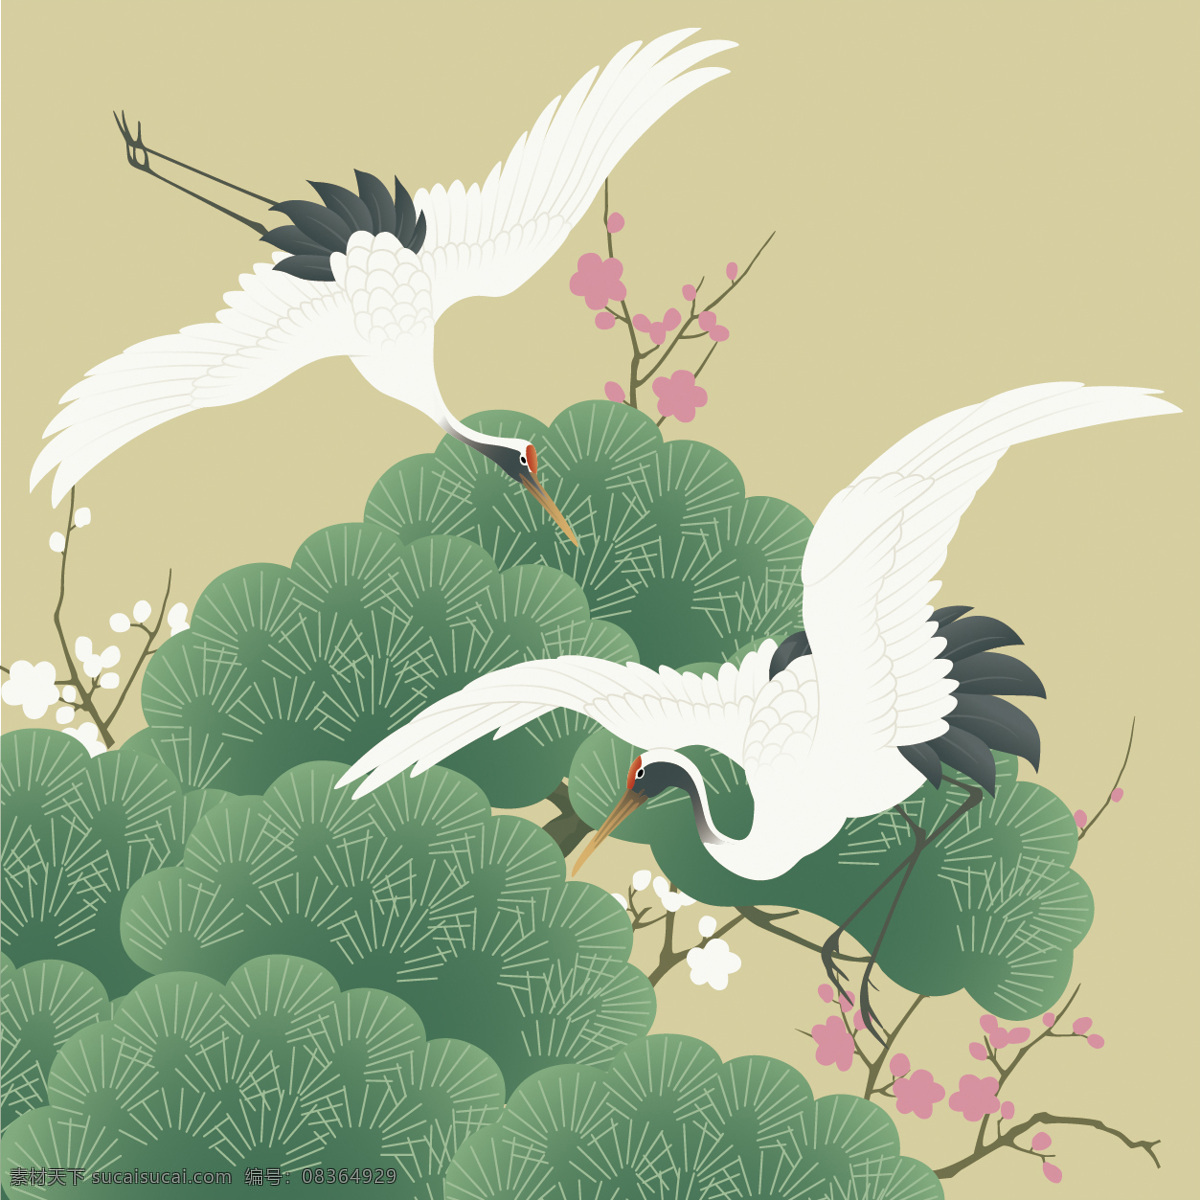 中国 风 仙鹤 树林 背景 大气 广告 海报 花枝 简约 树枝 水墨画